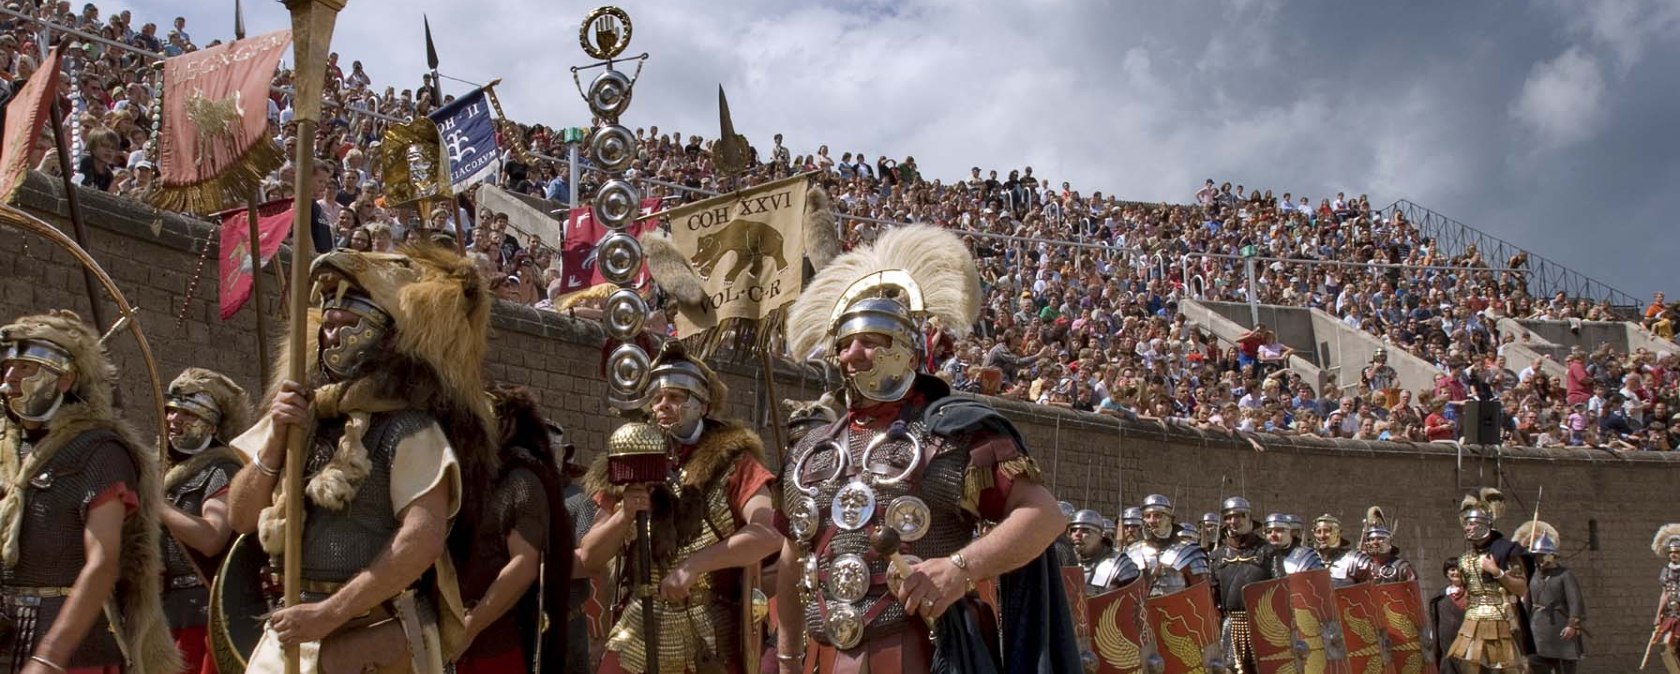 Legionairs en gladiatoren marcheren in één keer de arena binnen, © Axel Thünker DGPh